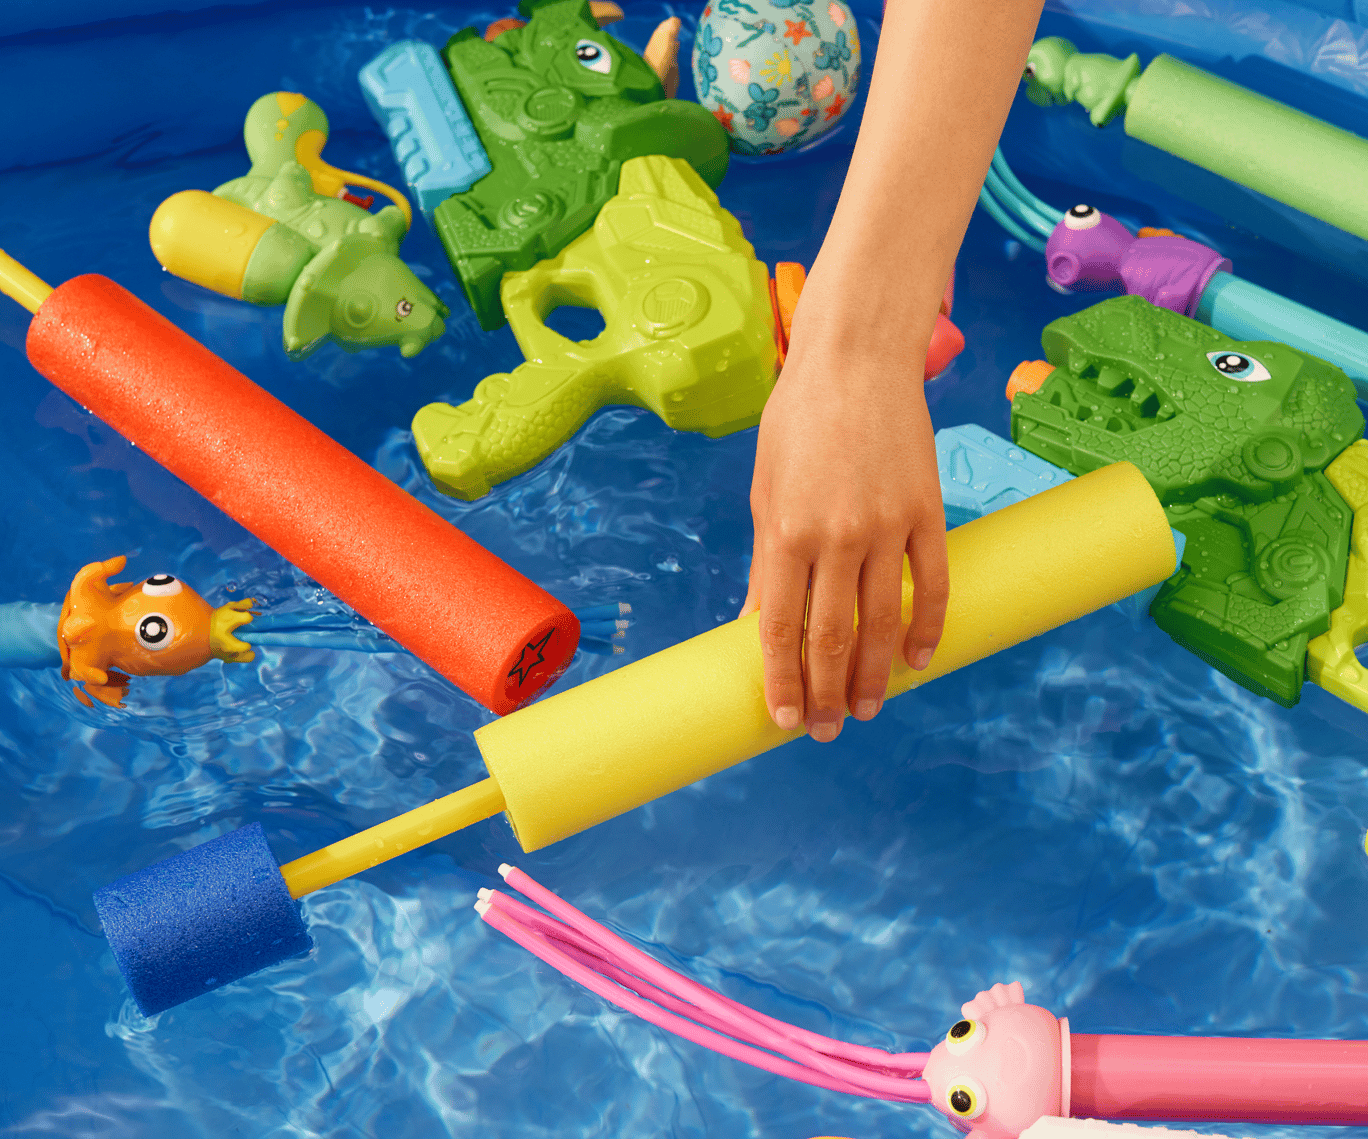 Nekonečná zábava s našimi hračkami do vody